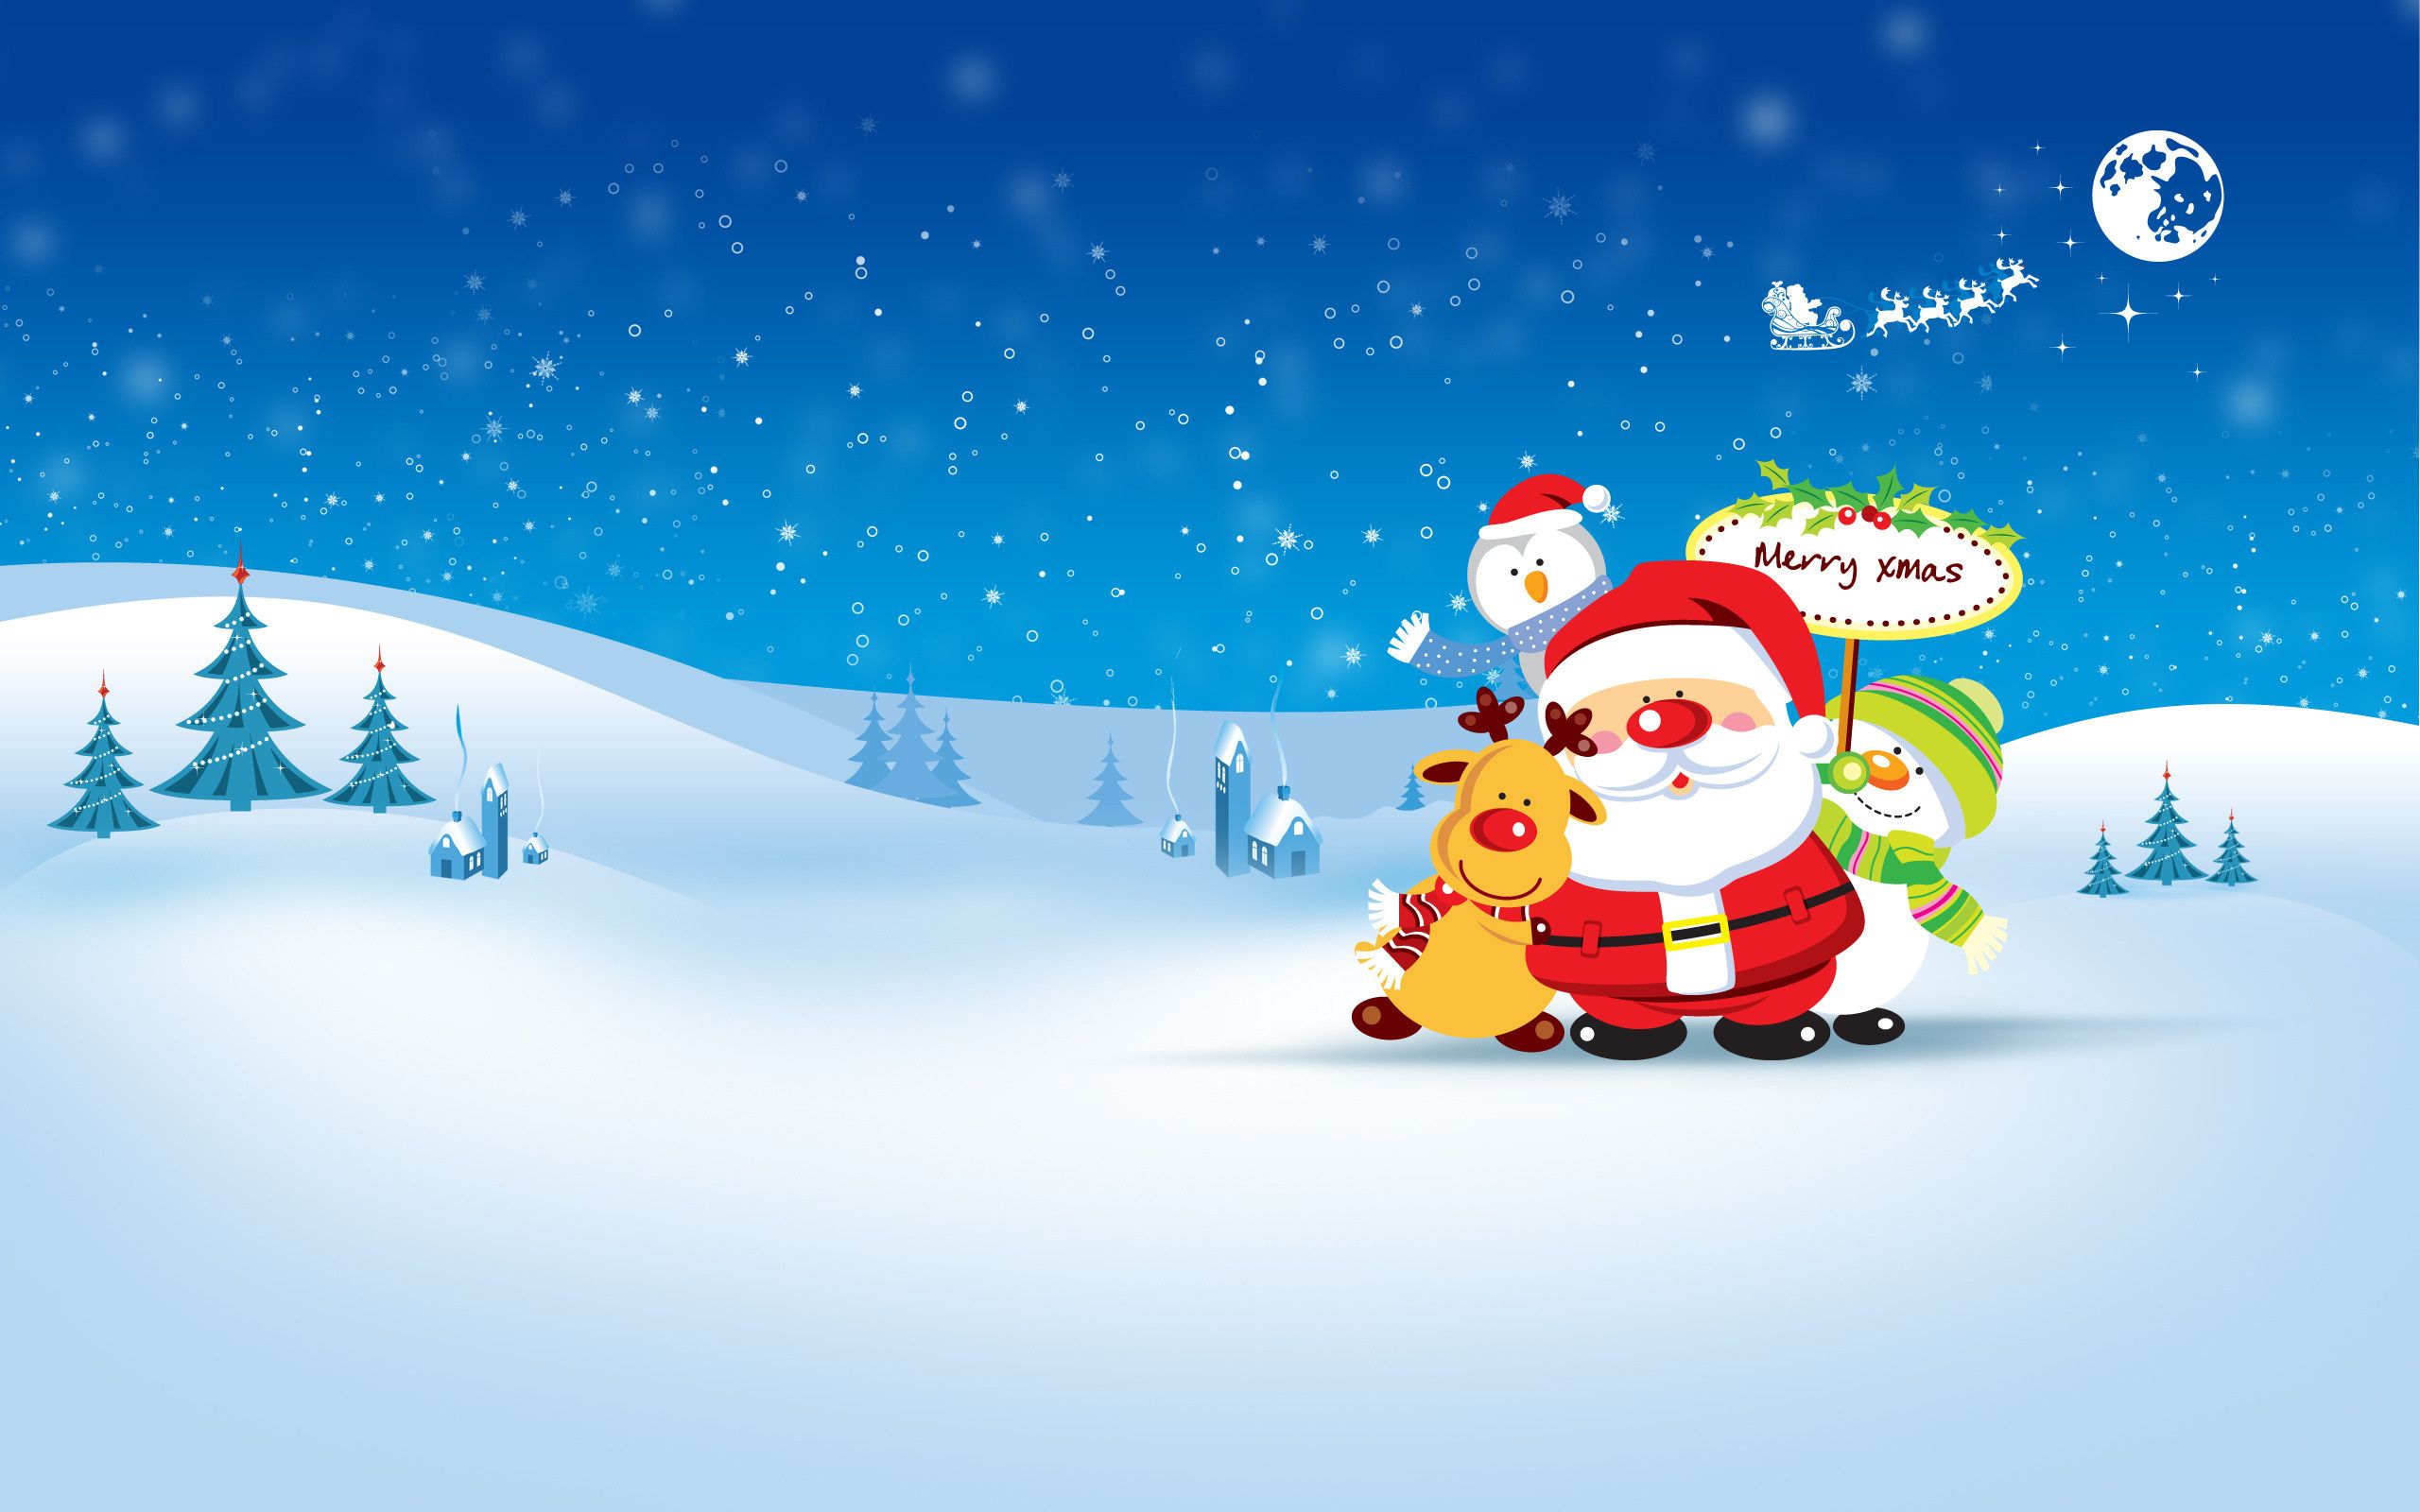 3624) Merry Christmas Desktop Background Wallpaper - WalOps.com